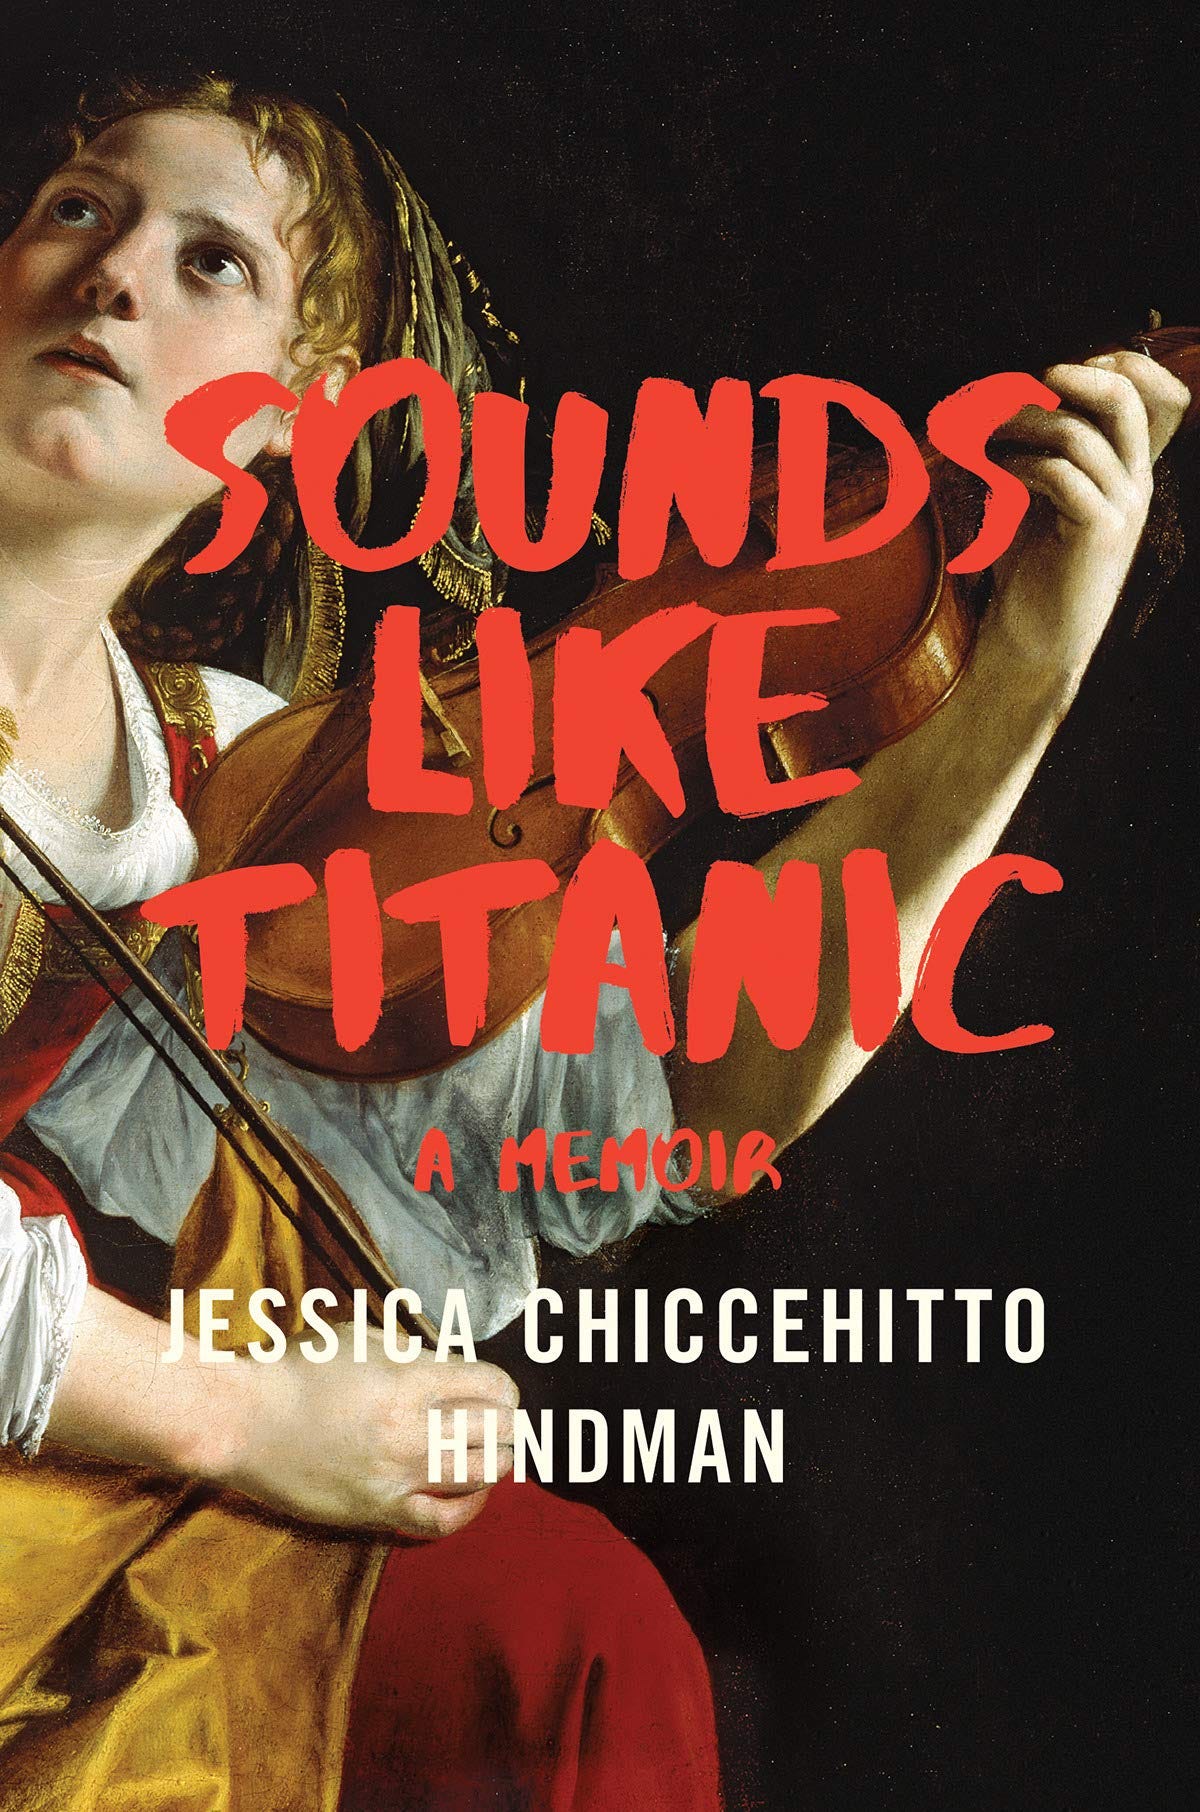 Amazon.com: Sounds Like Titanic: A Memoir (9780393651645): Hindman ...